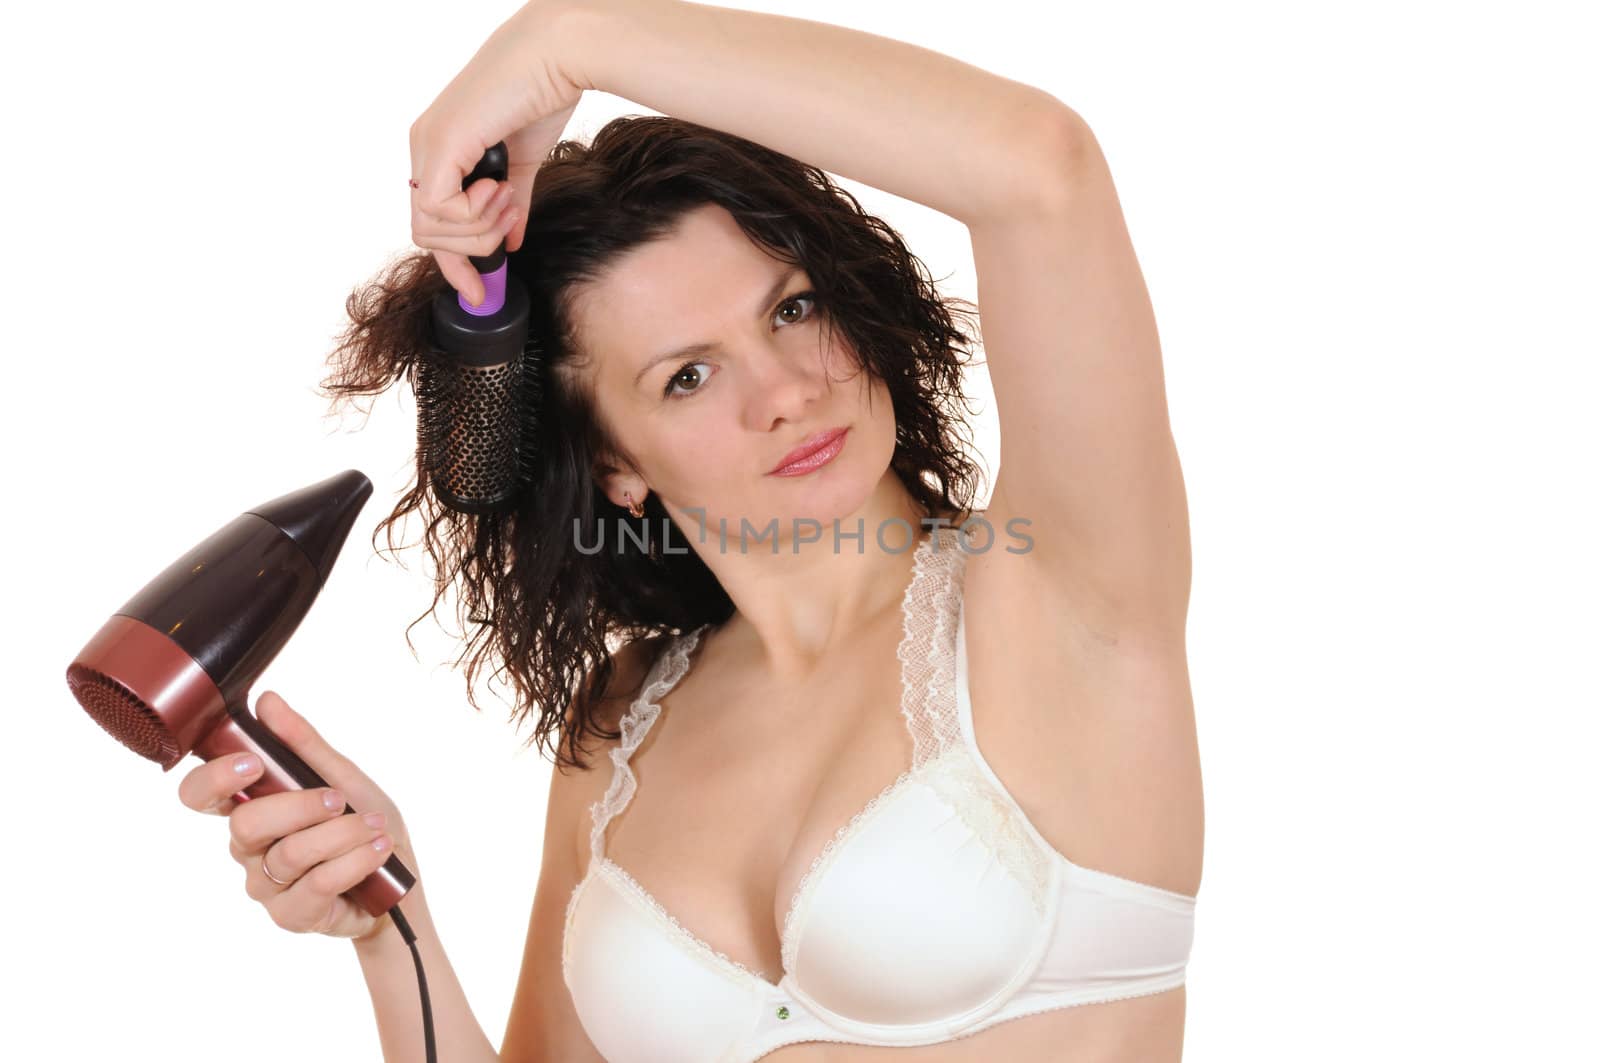 The woman dries the hair dryer hair